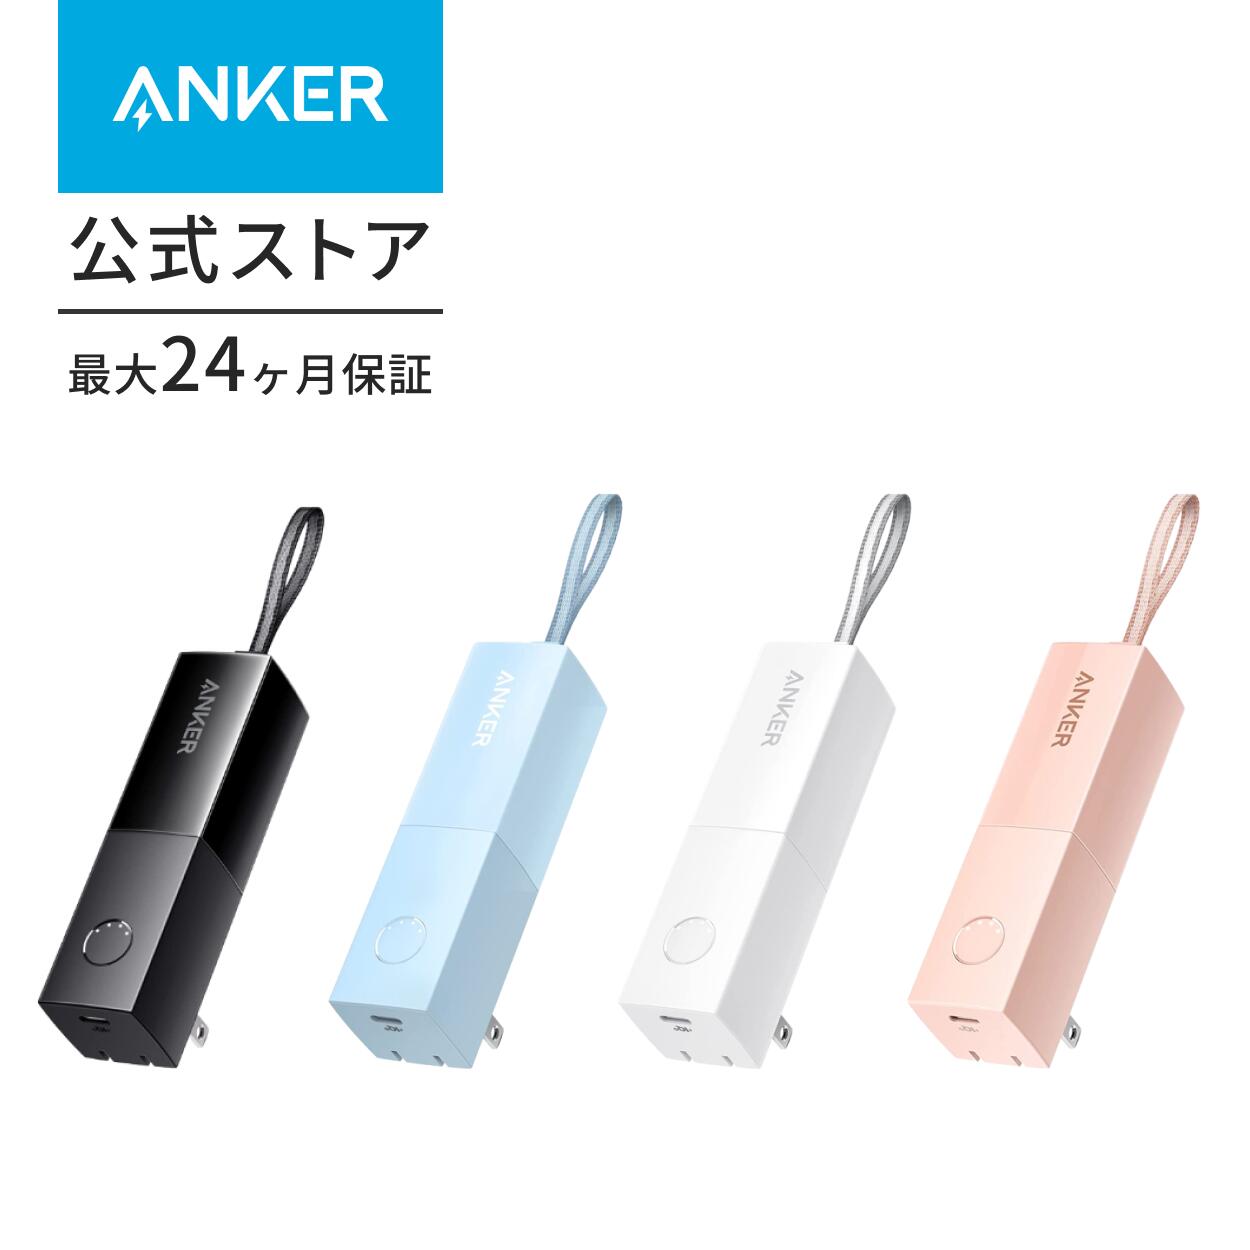 【一部あす楽対応】Anker 511 Power Bank (PowerCore Fusion 5000) (5000mAhモバイルバッテリー搭載 USB充電器/USB PD対応) 【PSE技術基準適合/コンセント 一体型/PowerIQ 3.0(Gen2)搭載/折りたたみ式プラグ】 iPhone13 /13 Pro Android